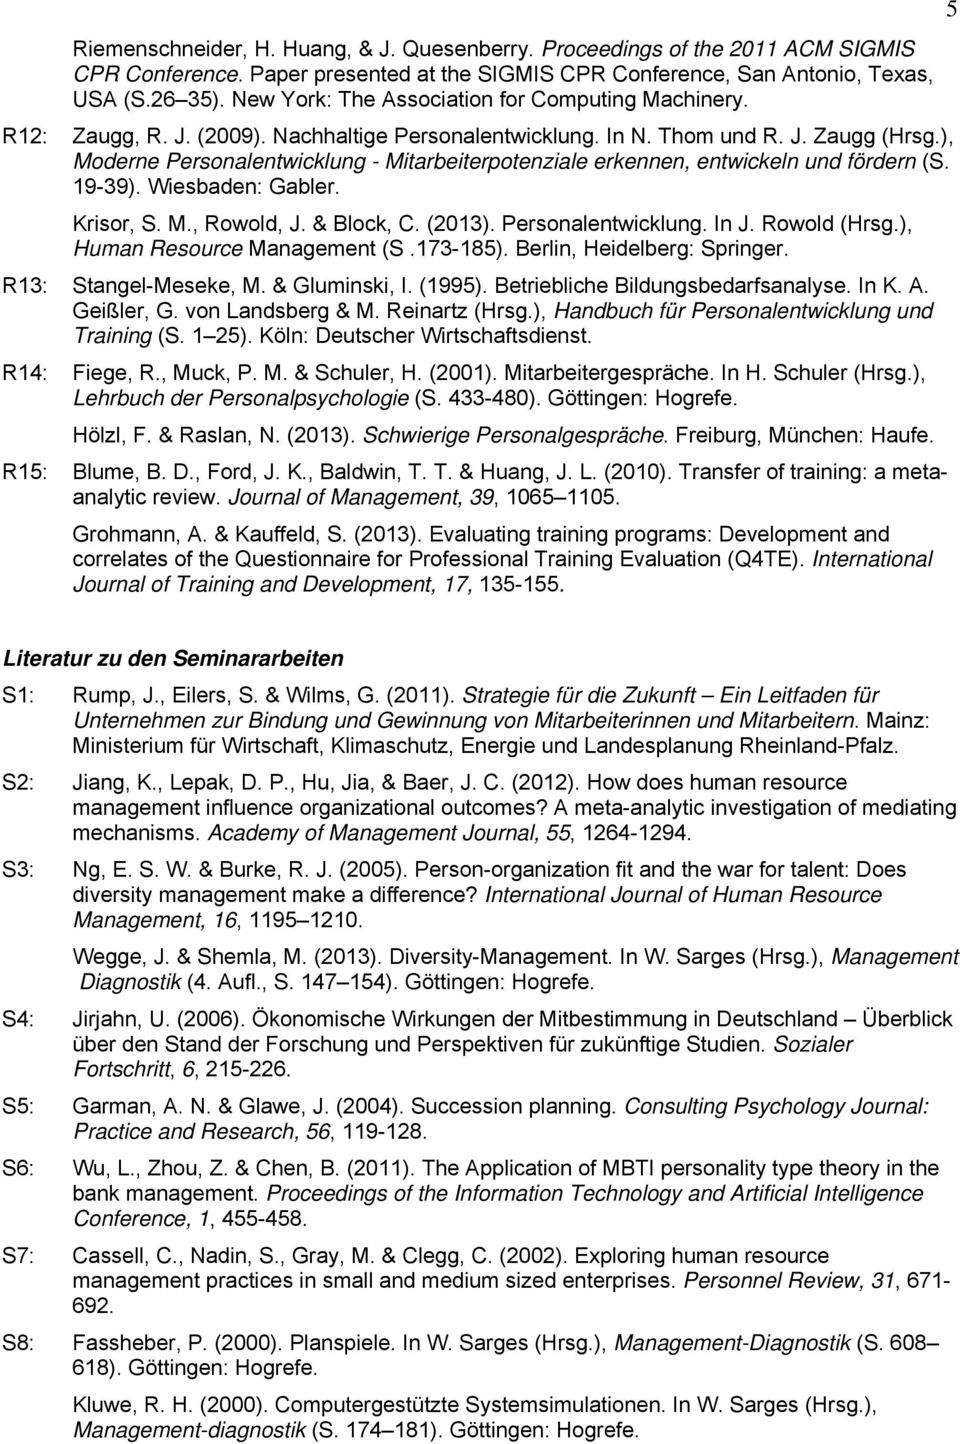 ), Moderne Personalentwicklung - Mitarbeiterpotenziale erkennen, entwickeln und fördern (S. 19-39). Wiesbaden: Gabler. Krisor, S. M., Rowold, J. & Block, C. (2013). Personalentwicklung. In J.